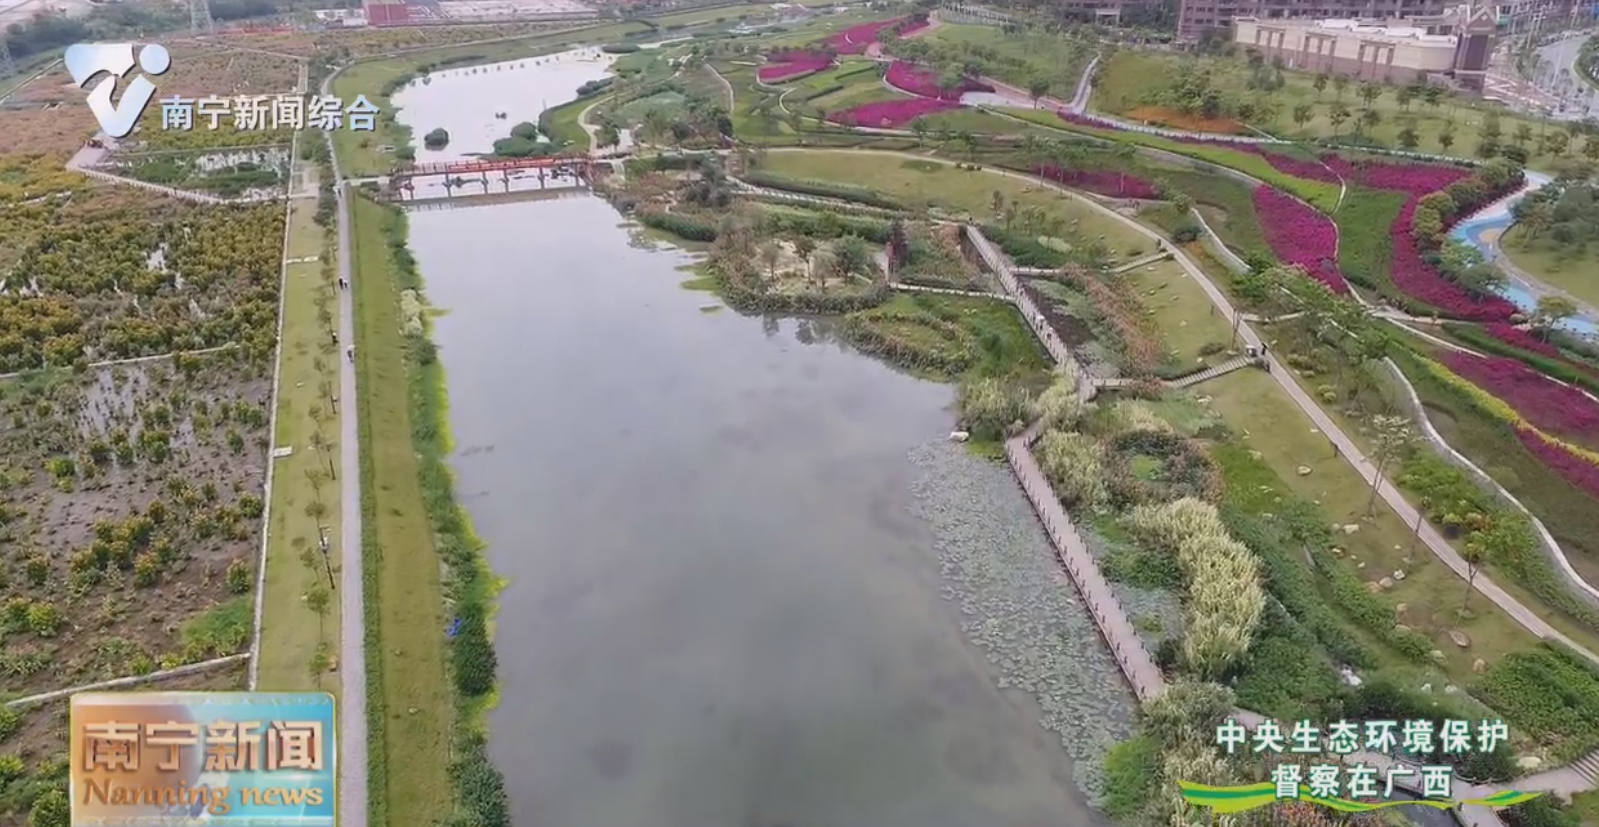 竹排江黑臭水体系统治理见成效  “纳污河”变身滨河公园